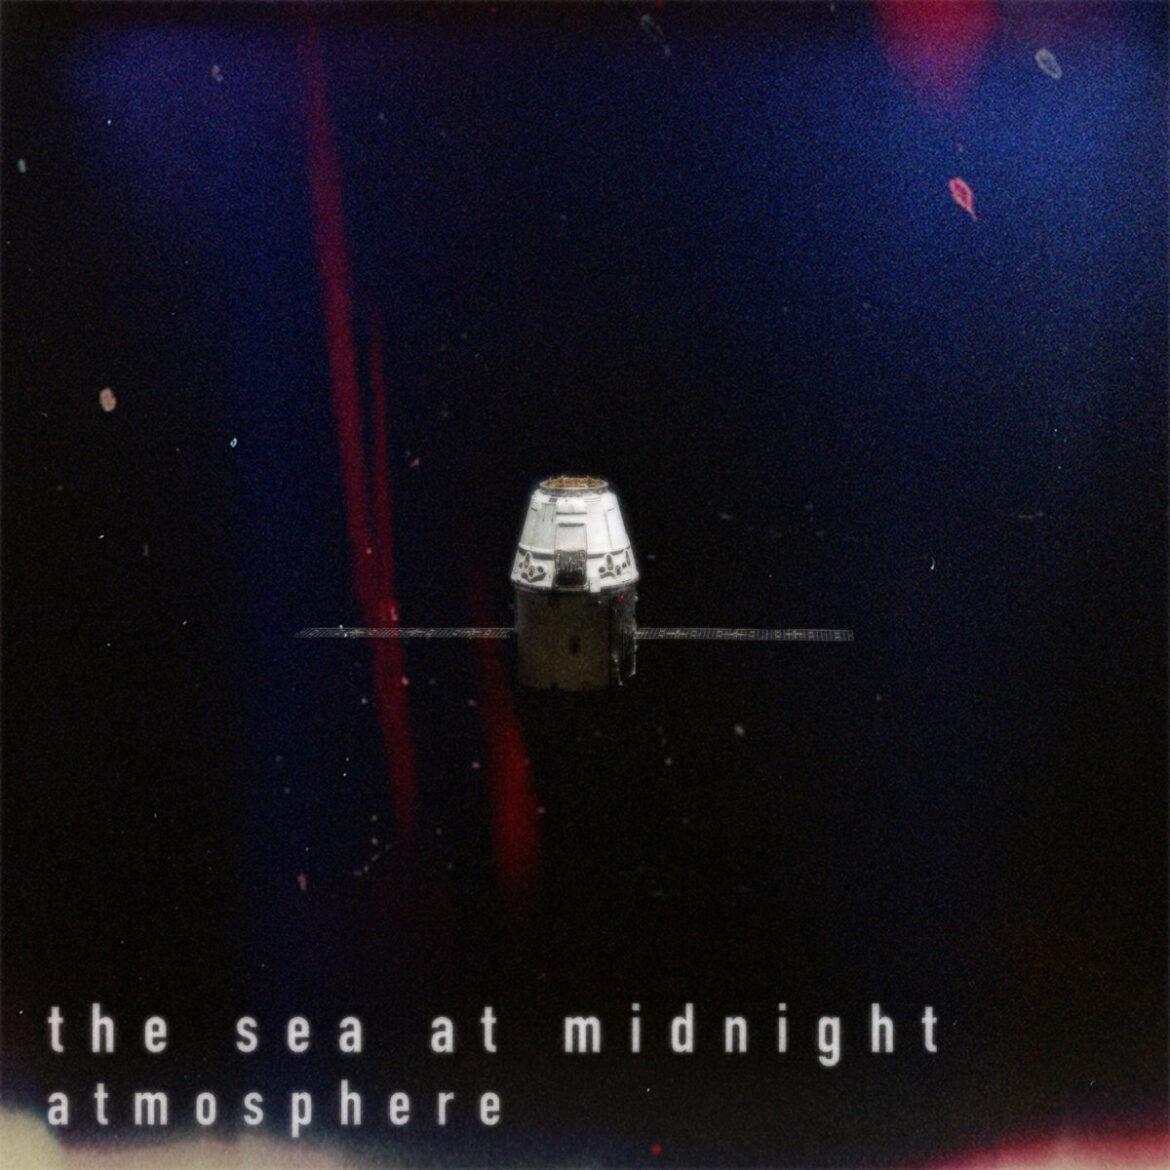 Cover für die digitale Single "Atmosphere" von THE SEA AT MIDNIGHT. Es zeigt eine verlorene Raumkapsel im All.